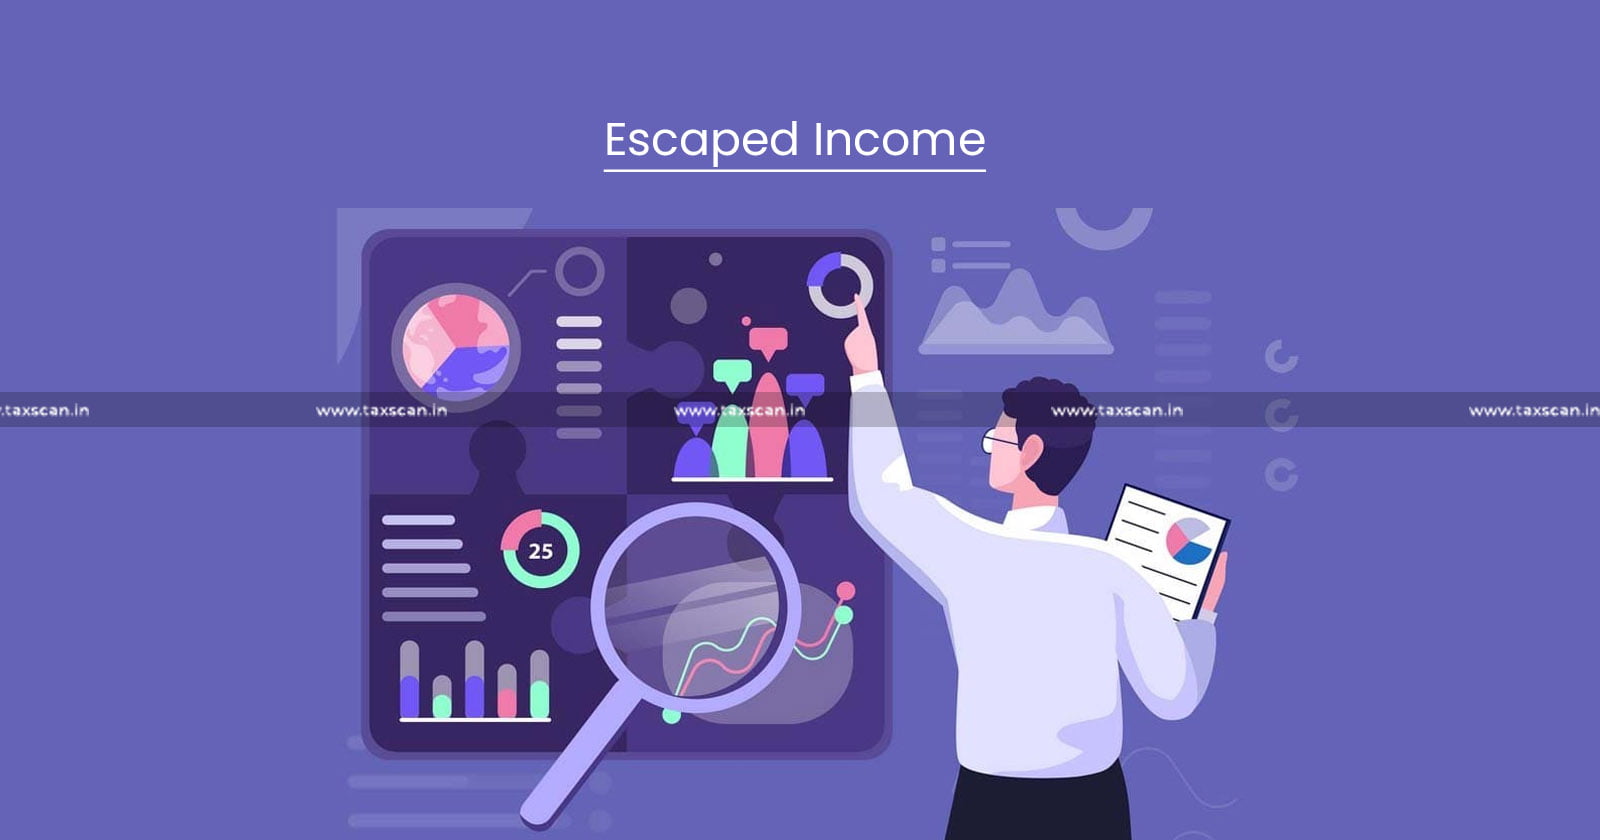 Escaped Income - Income - ITAT - Re-Assessment - Income Tax - Tax - taxscan